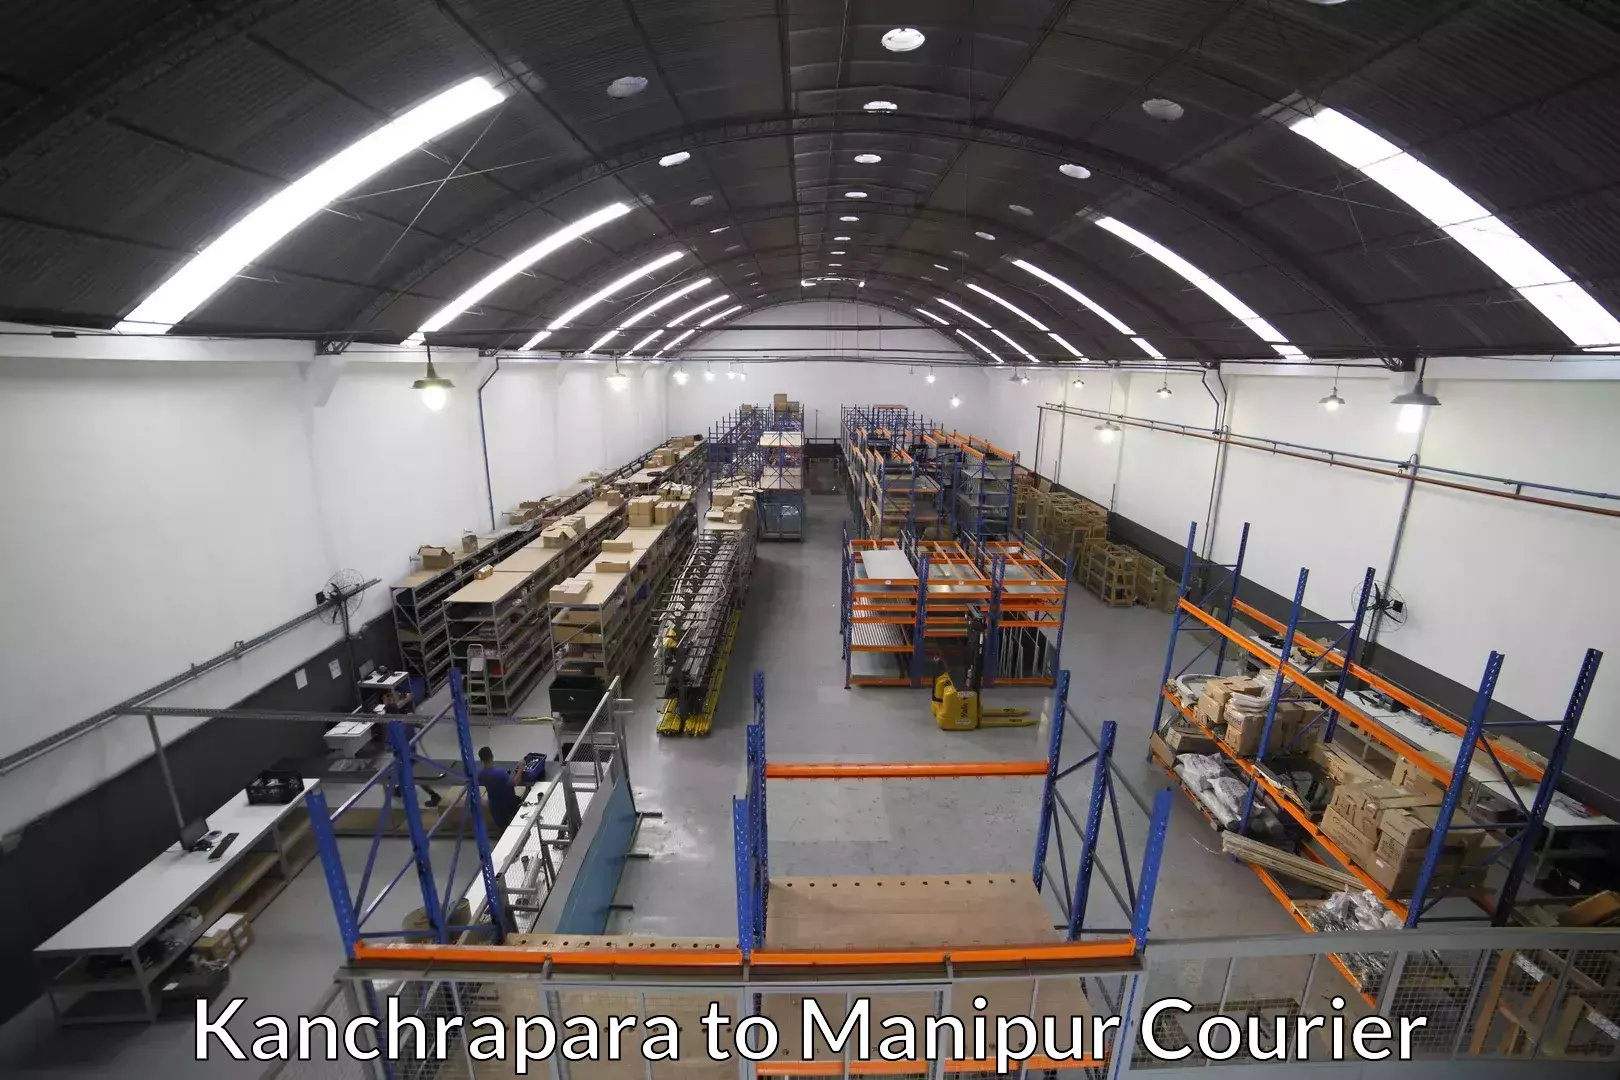 Furniture moving experts Kanchrapara to Churachandpur